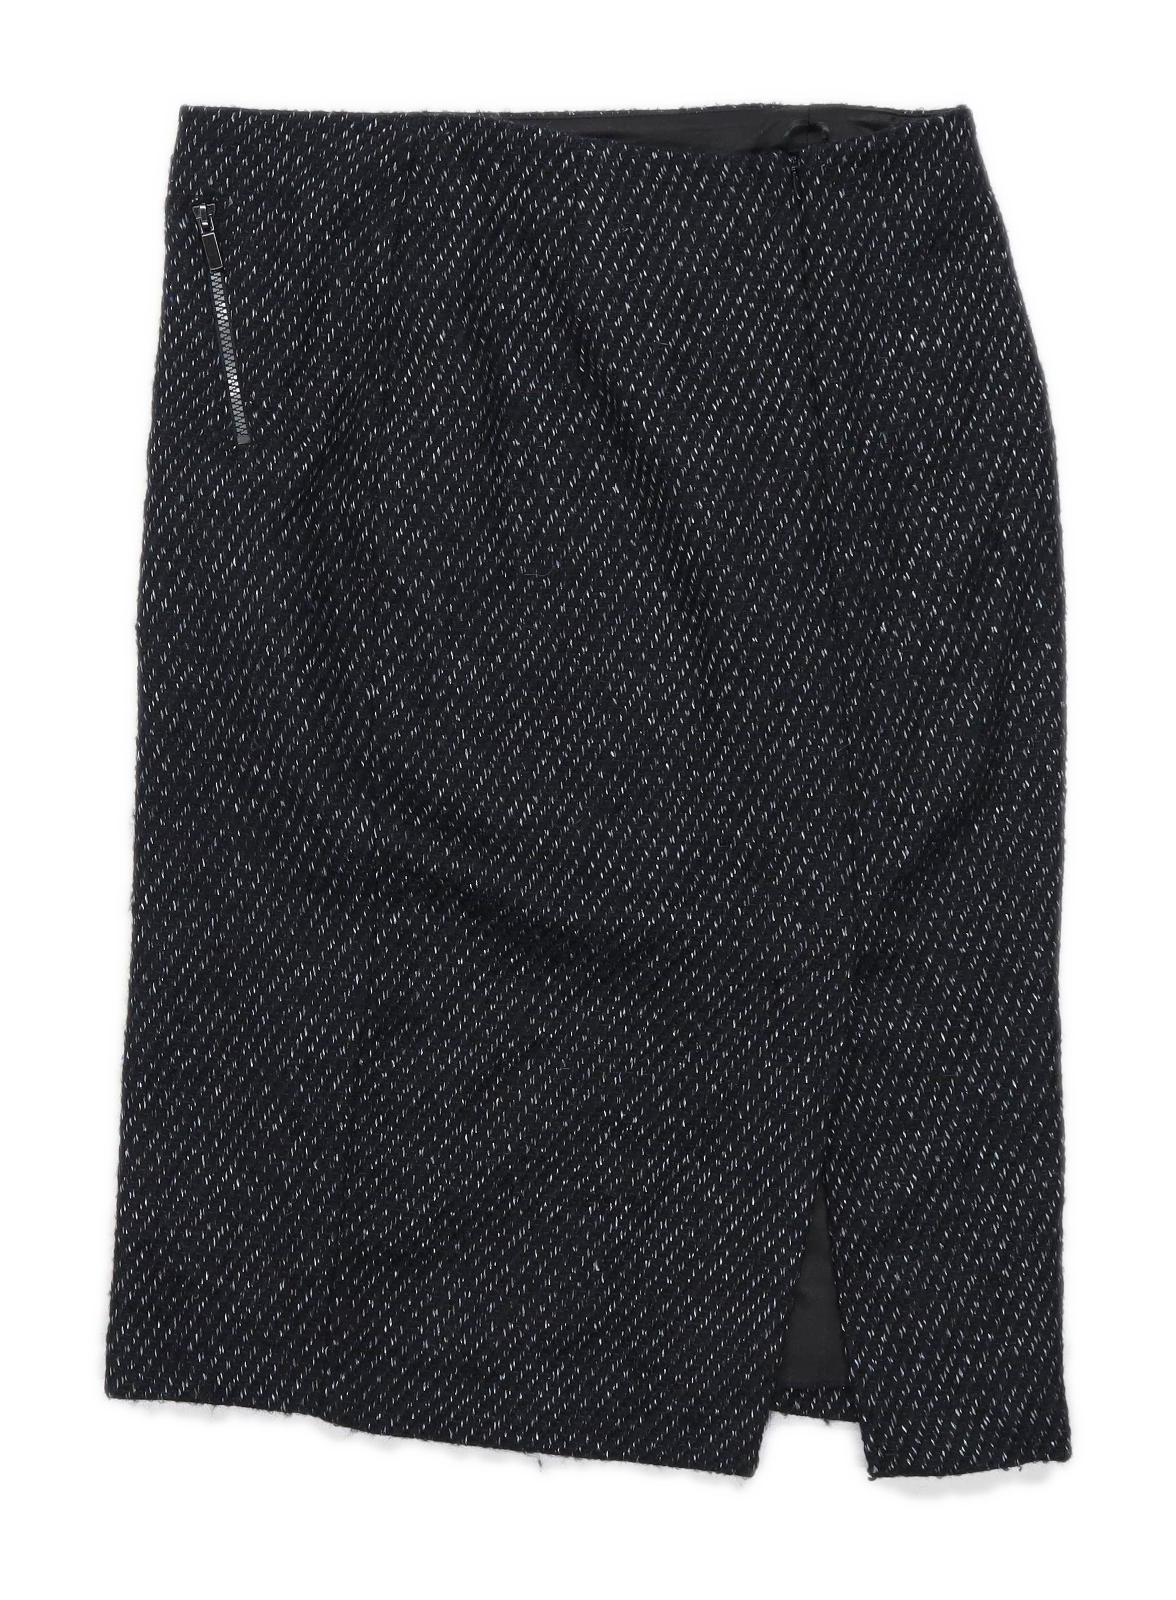 Marks & Spencer Womens Size 12 Wool Blend Black Skirt (Regular)